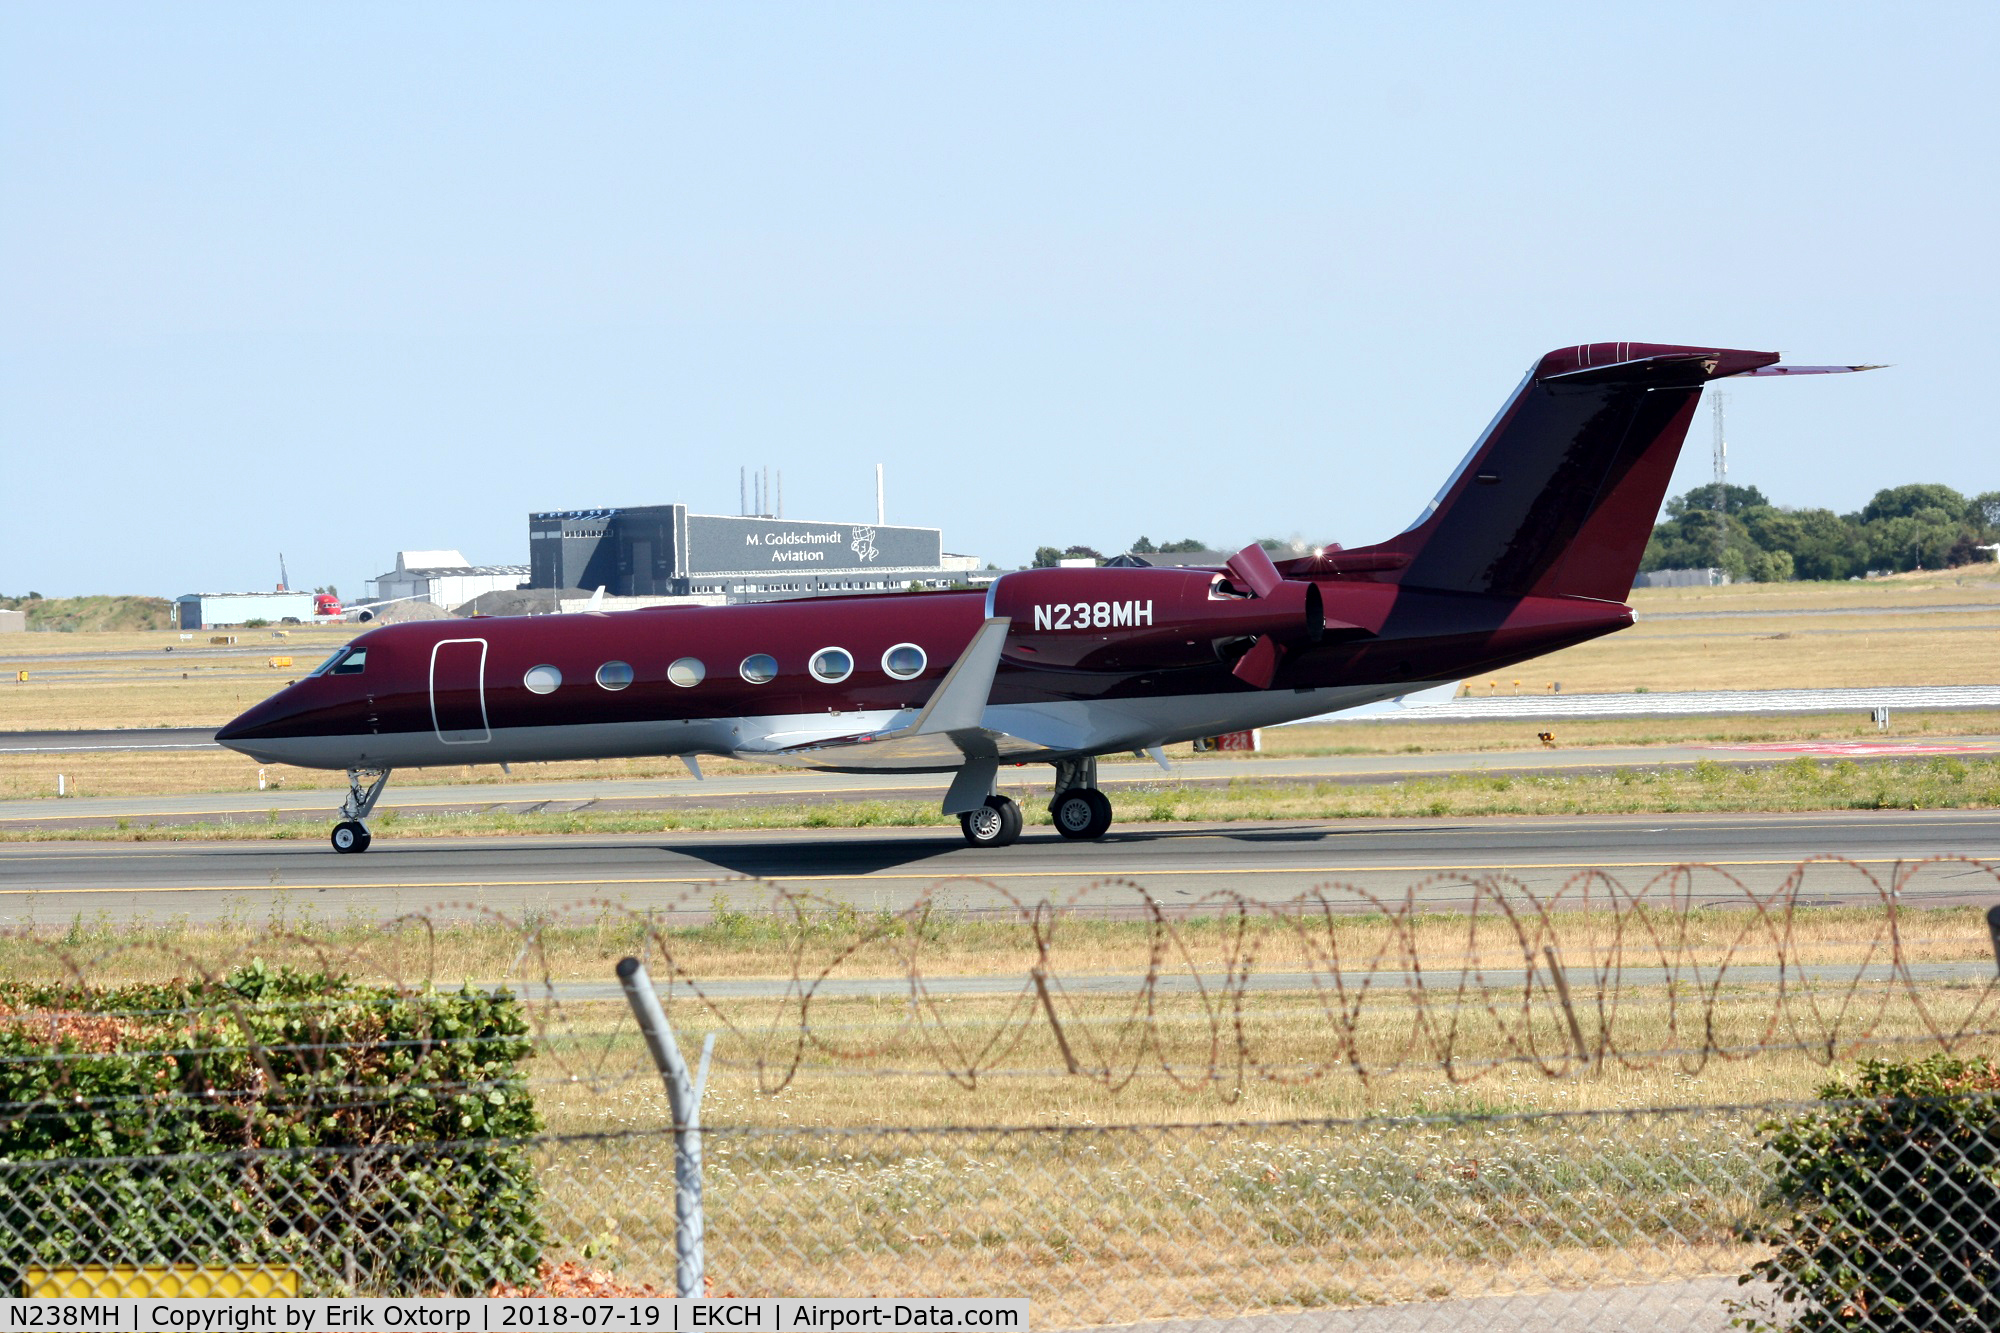 N238MH, 2014 Gulfstream Aerospace GIV-X (G450) C/N 4316, N238MH landed rw 04L